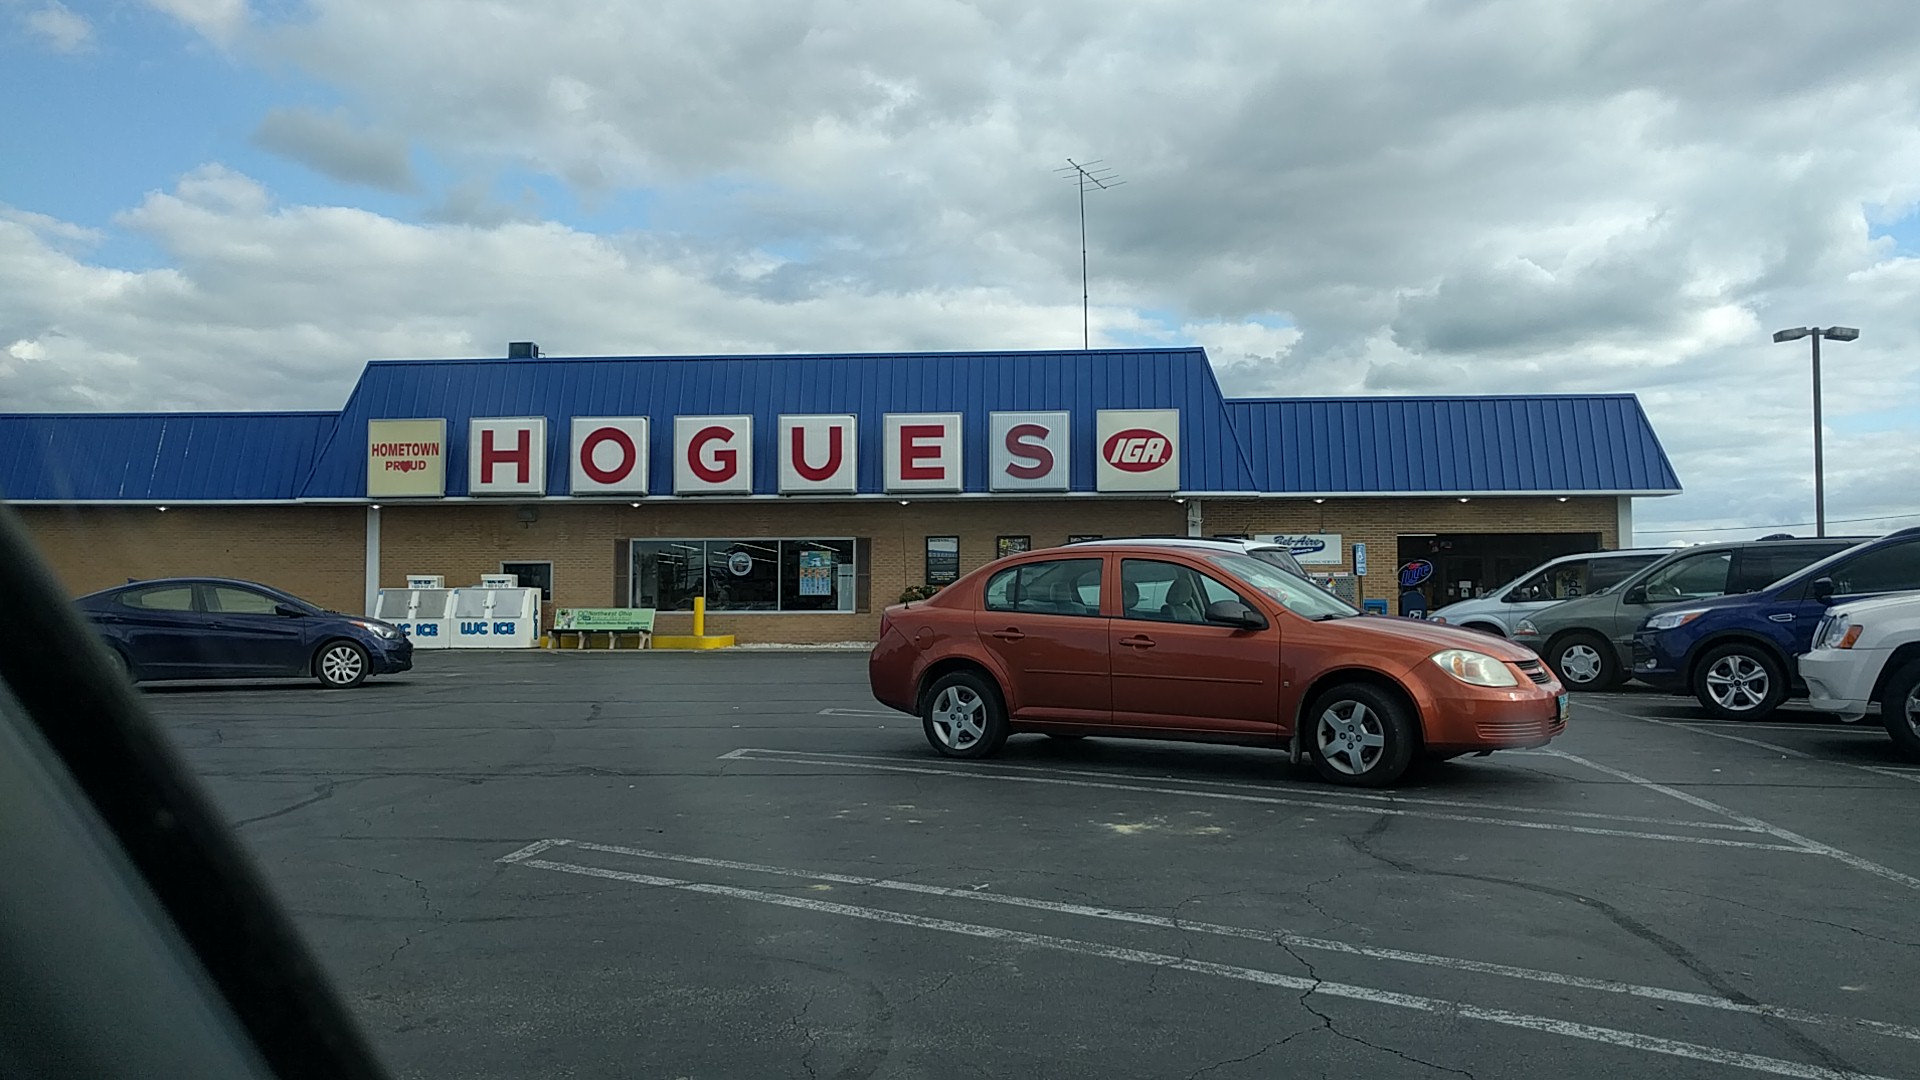 Hogue's Super Market